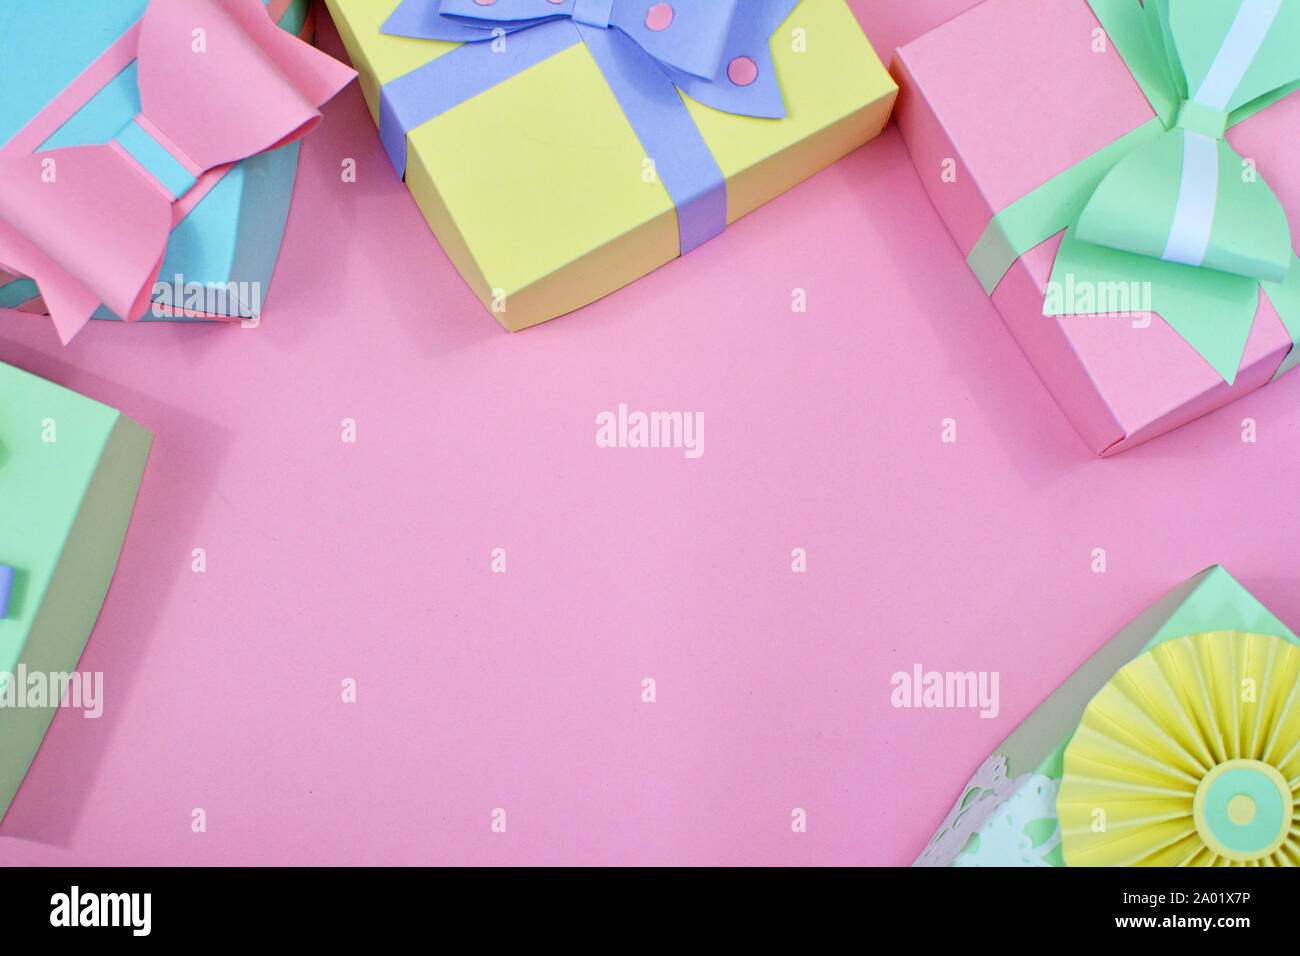 Appartamento laici con sfondo color pastello carta artigianale confezioni regalo con nastri framing copia dello spazio nel centro di sfondo rosa Foto Stock